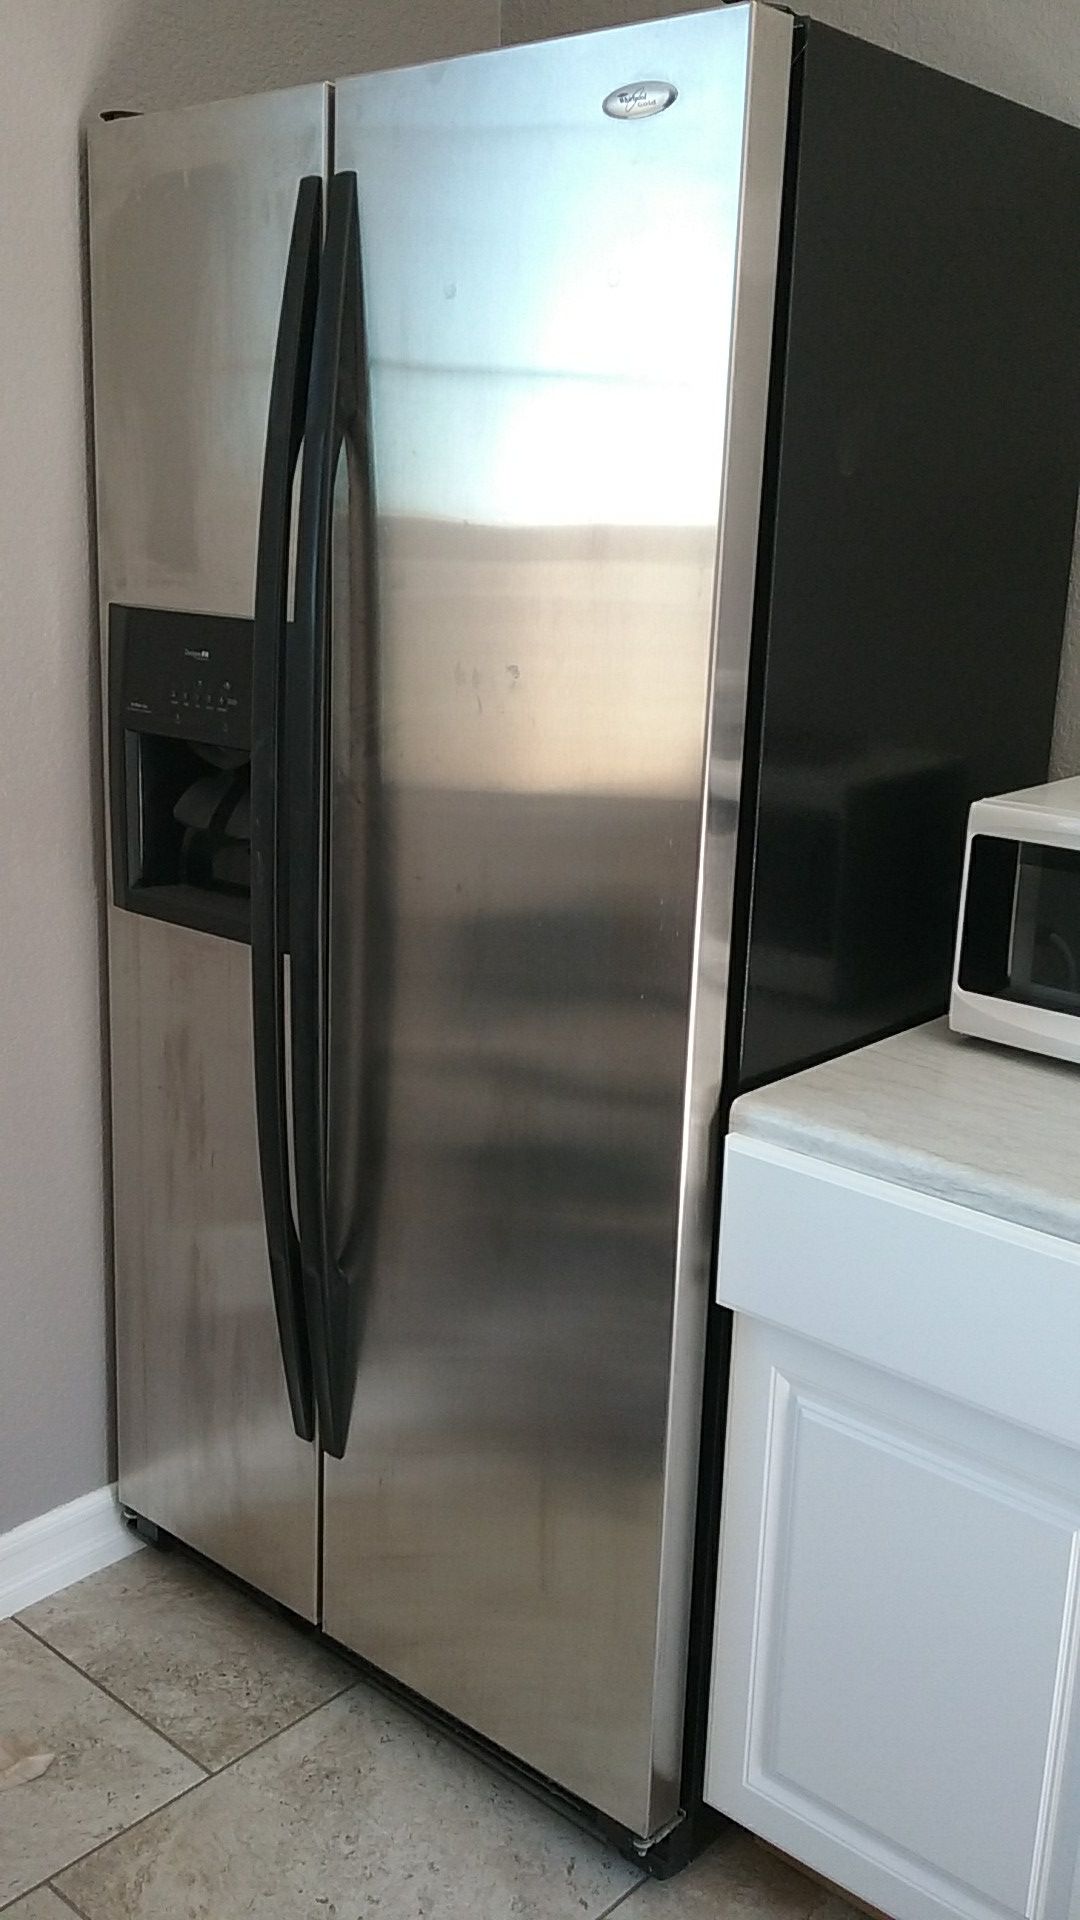 Refrigerator freezer Whirlpool Gold with in door ice & water